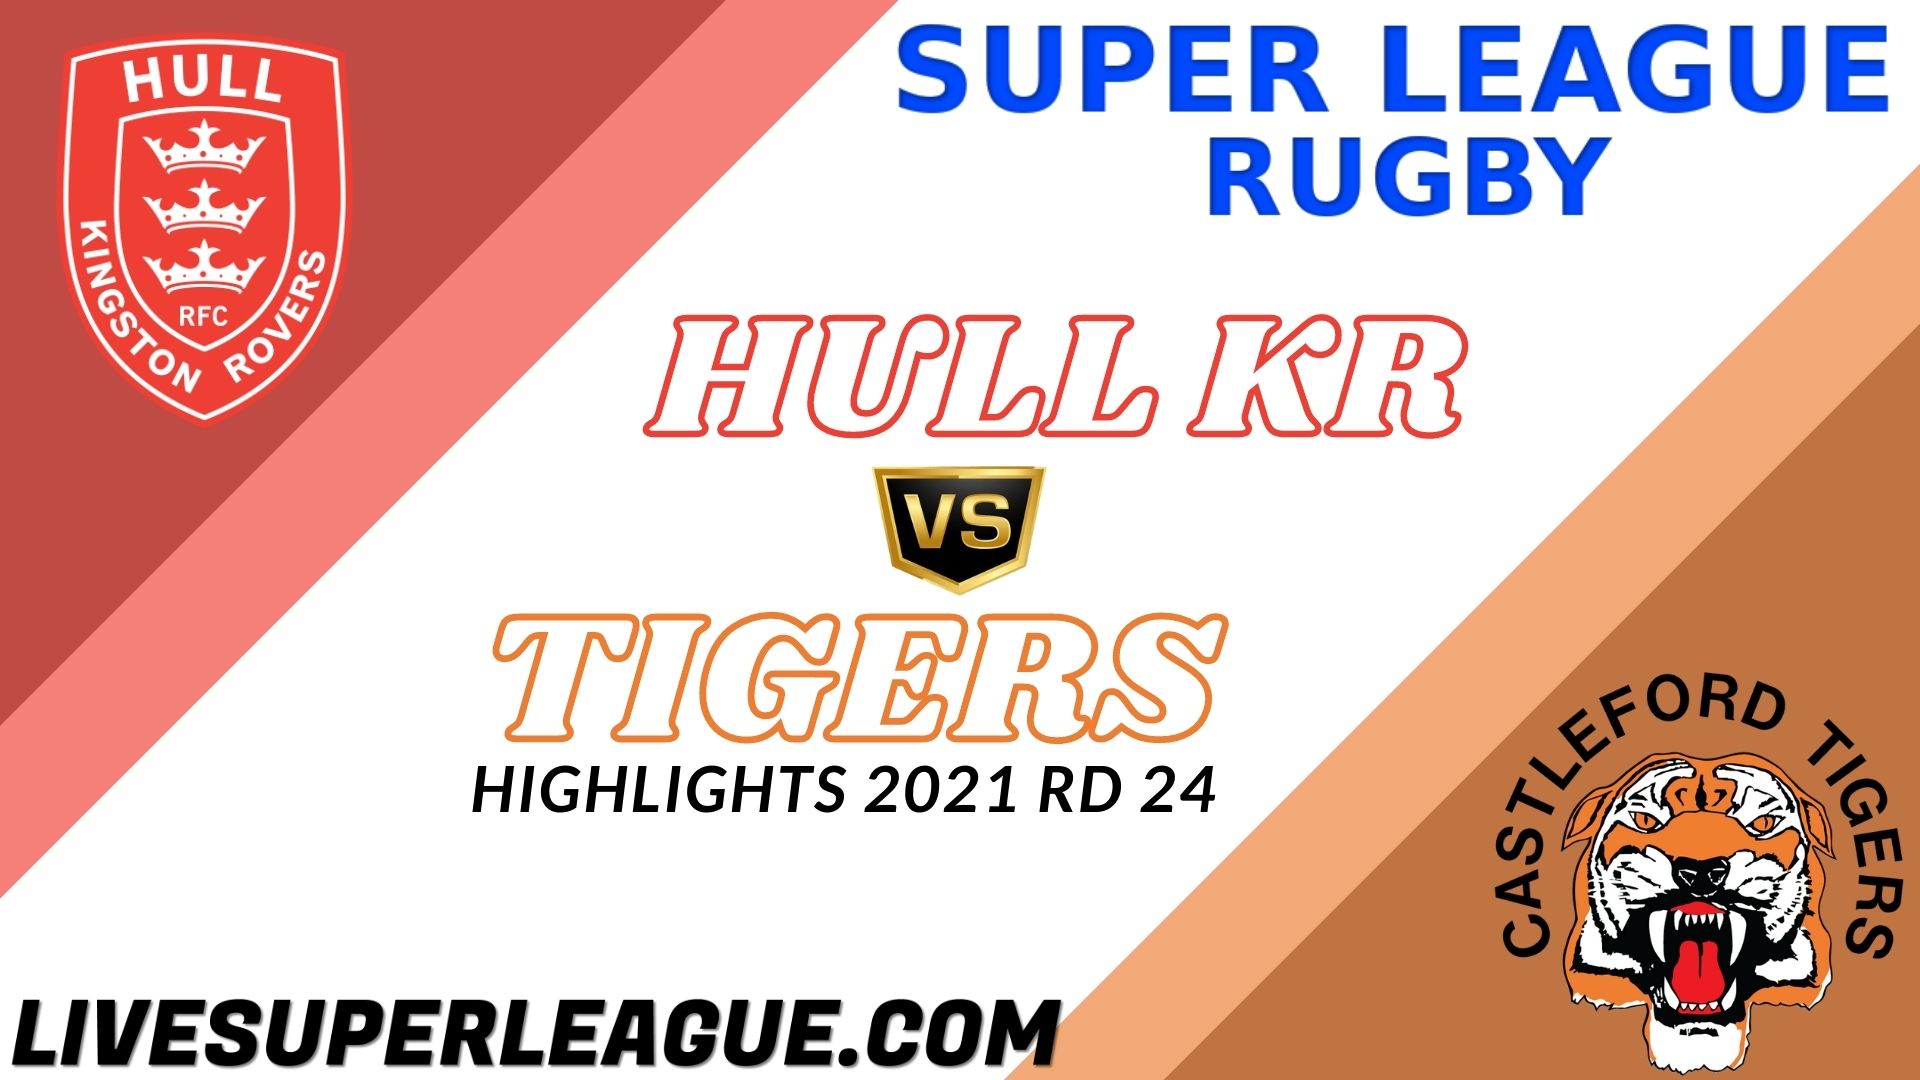 Hull KR Vs Castleford Tigers Highlights 2021